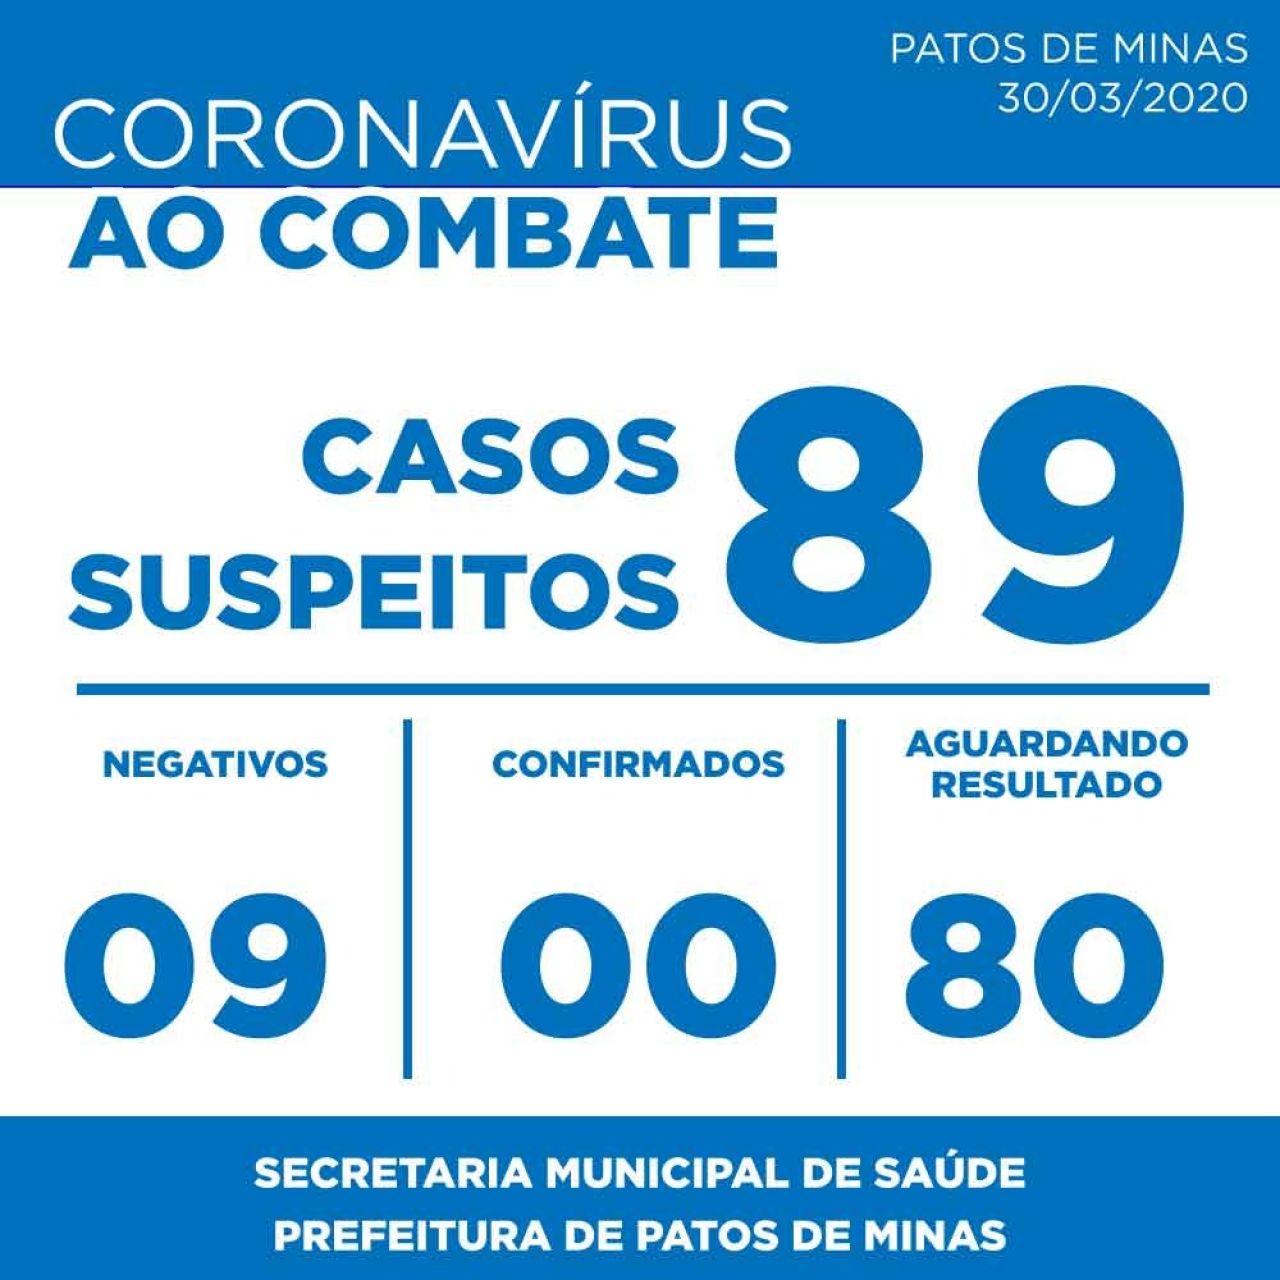 Coronavírus: Novo boletim epidemiológico informa 89 casos suspeitos em Patos de Minas